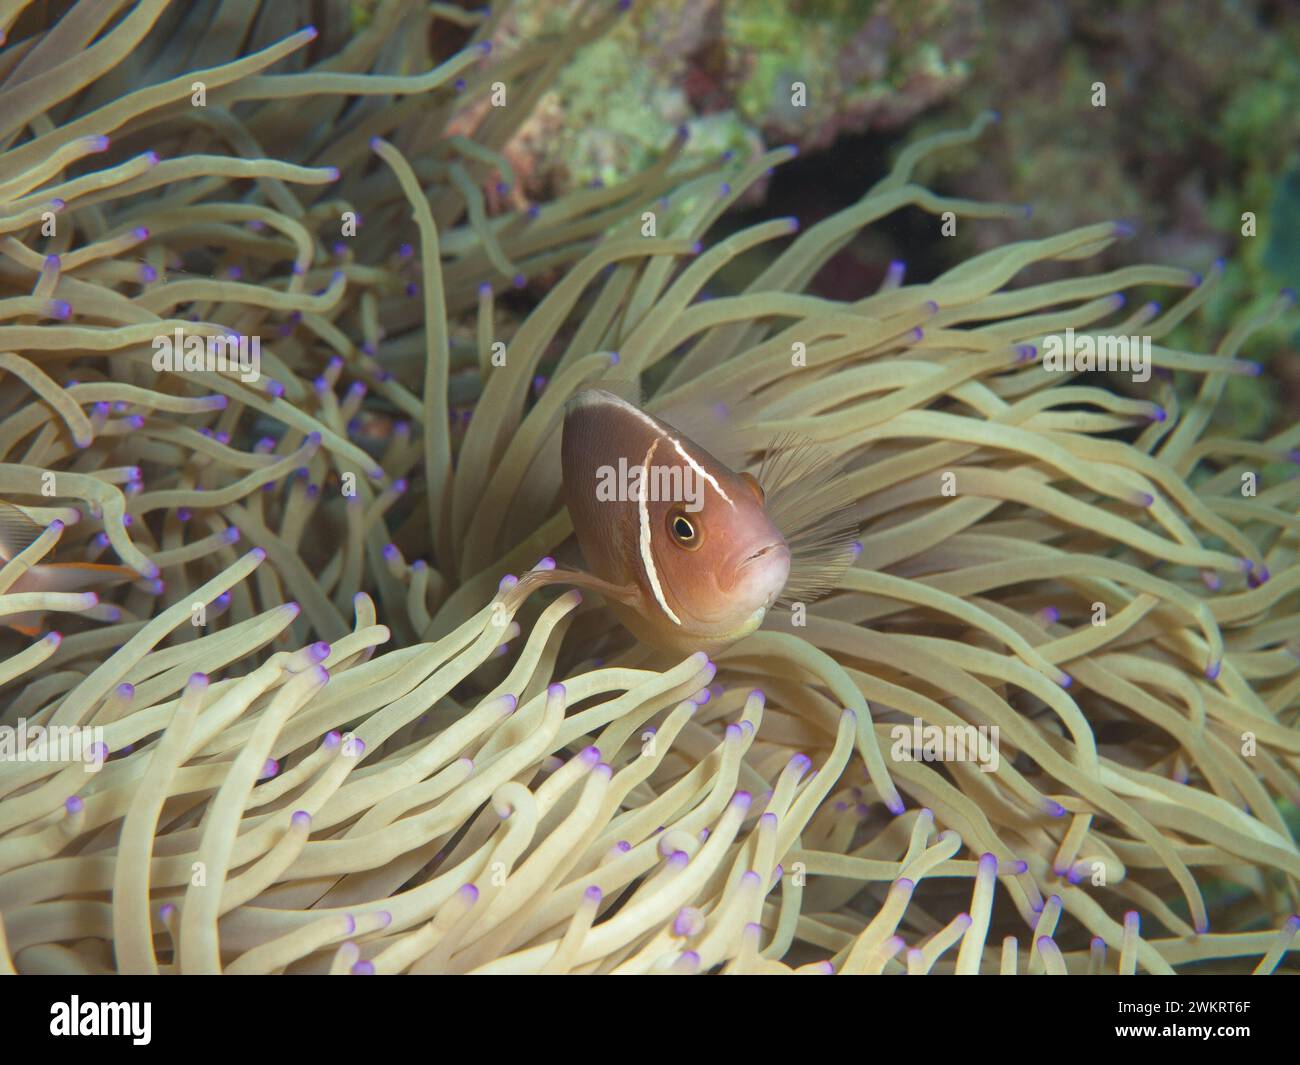 El pez canela siempre está en movimiento: El pez payaso se ve curiosamente fuera de su anémona. Fotografía submarina: Un arrecife de coral en Moalboal, Cebú, Filipinas. Foto de stock